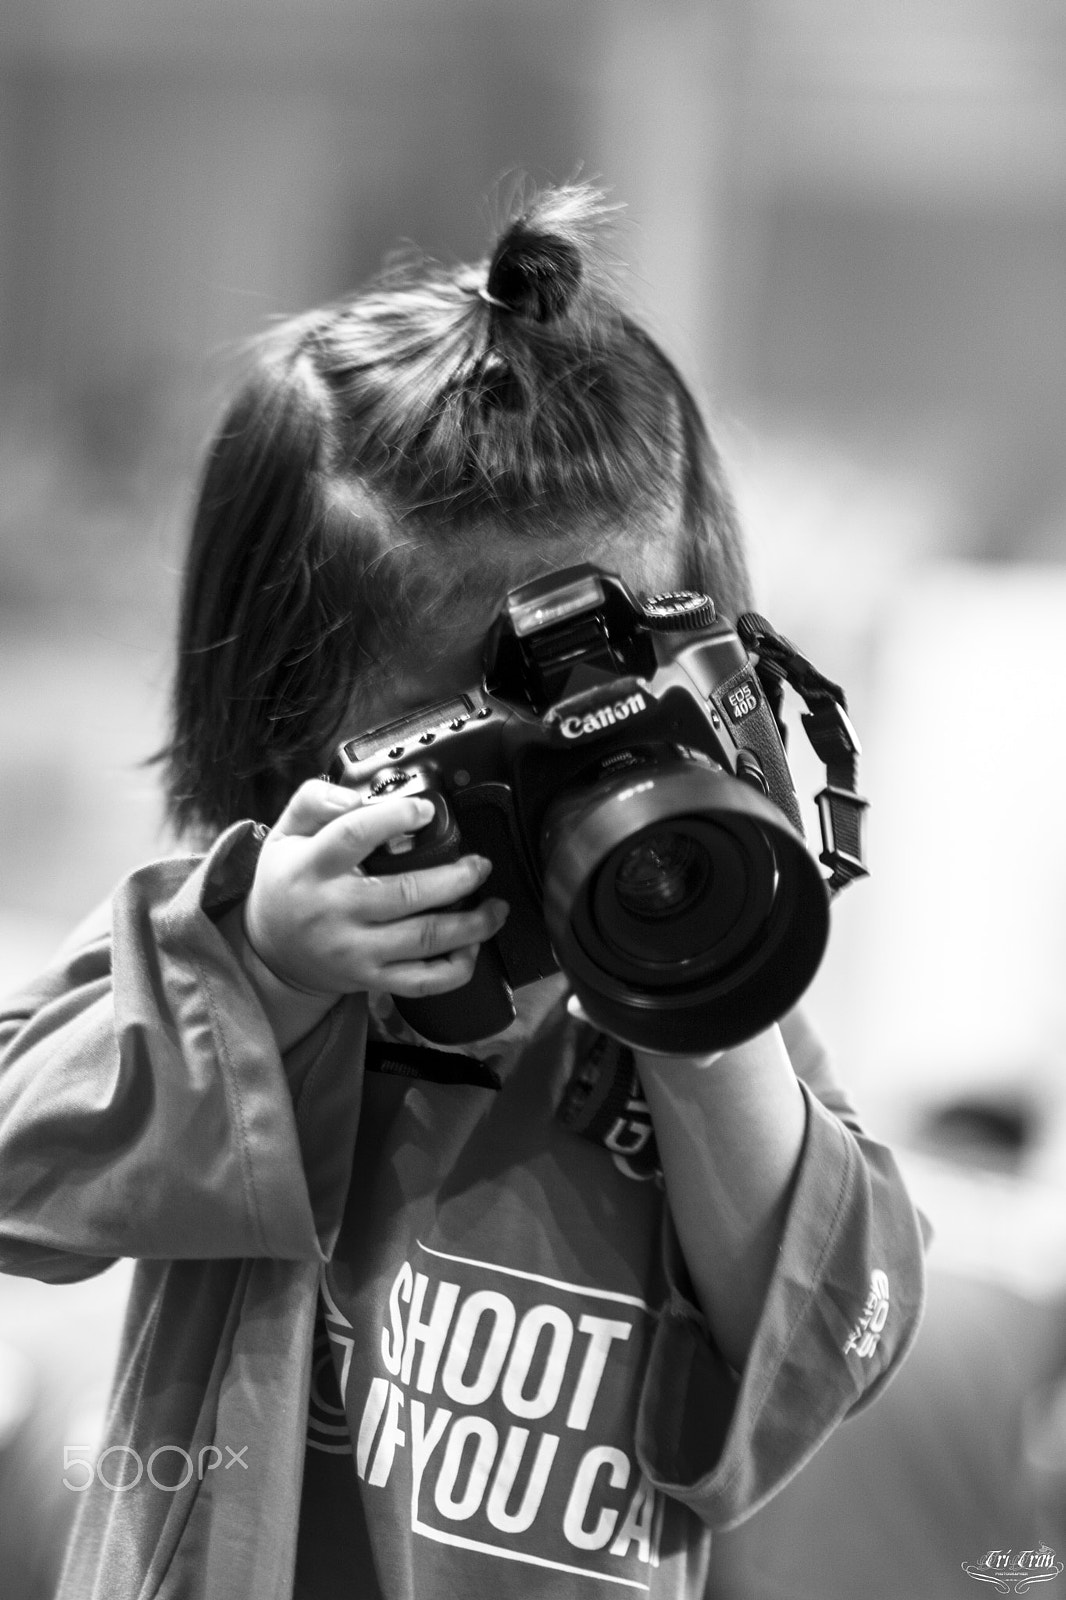 Nikon D7100 + Nikon AF Nikkor 85mm F1.8D sample photo. Child take a photo photography